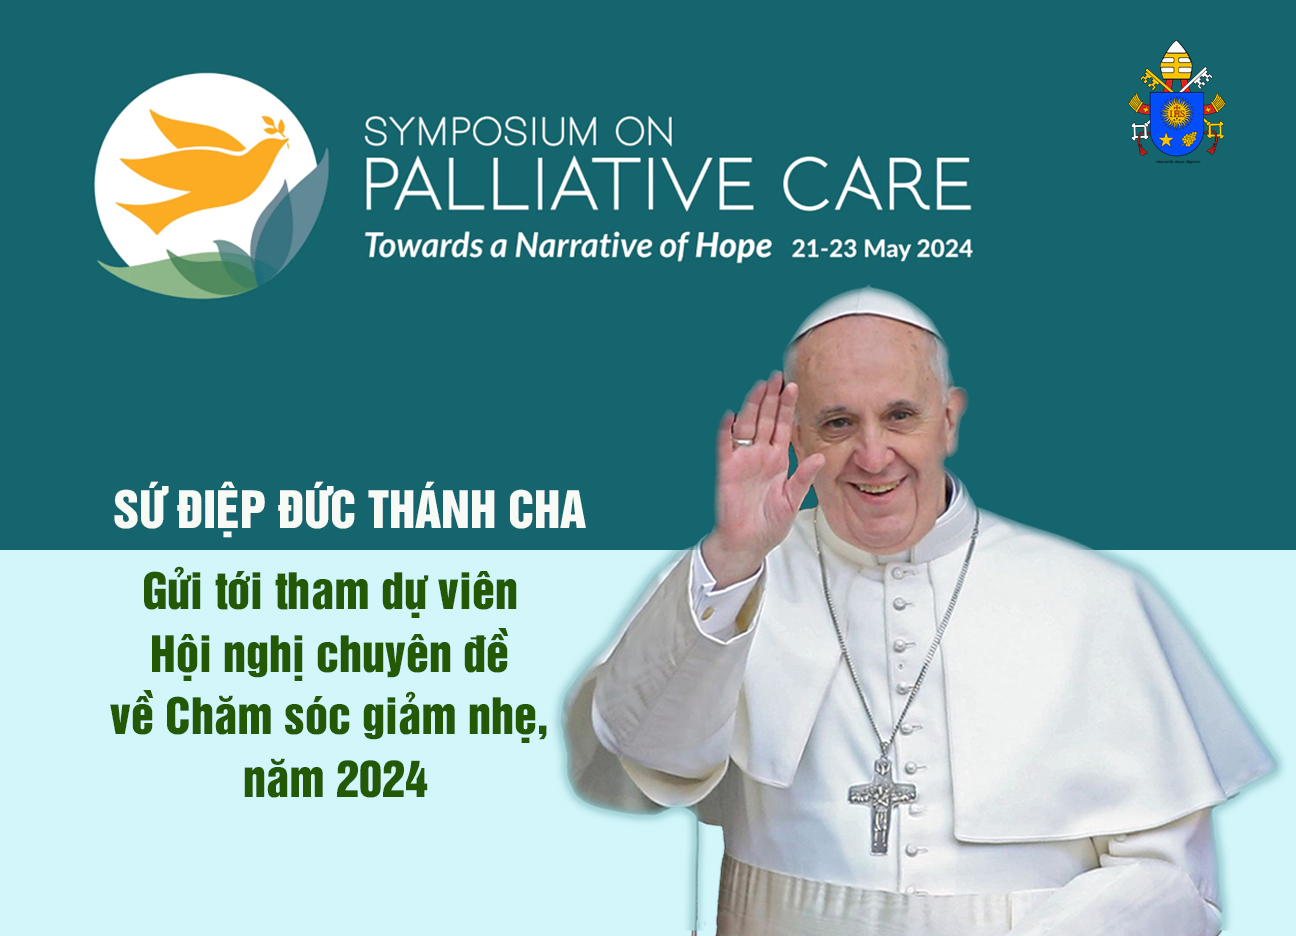 Sứ điệp Đức Thánh Cha Gửi tới tham dự viên Hội nghị chuyên đề về Chăm sóc giảm nhẹ, năm 2024